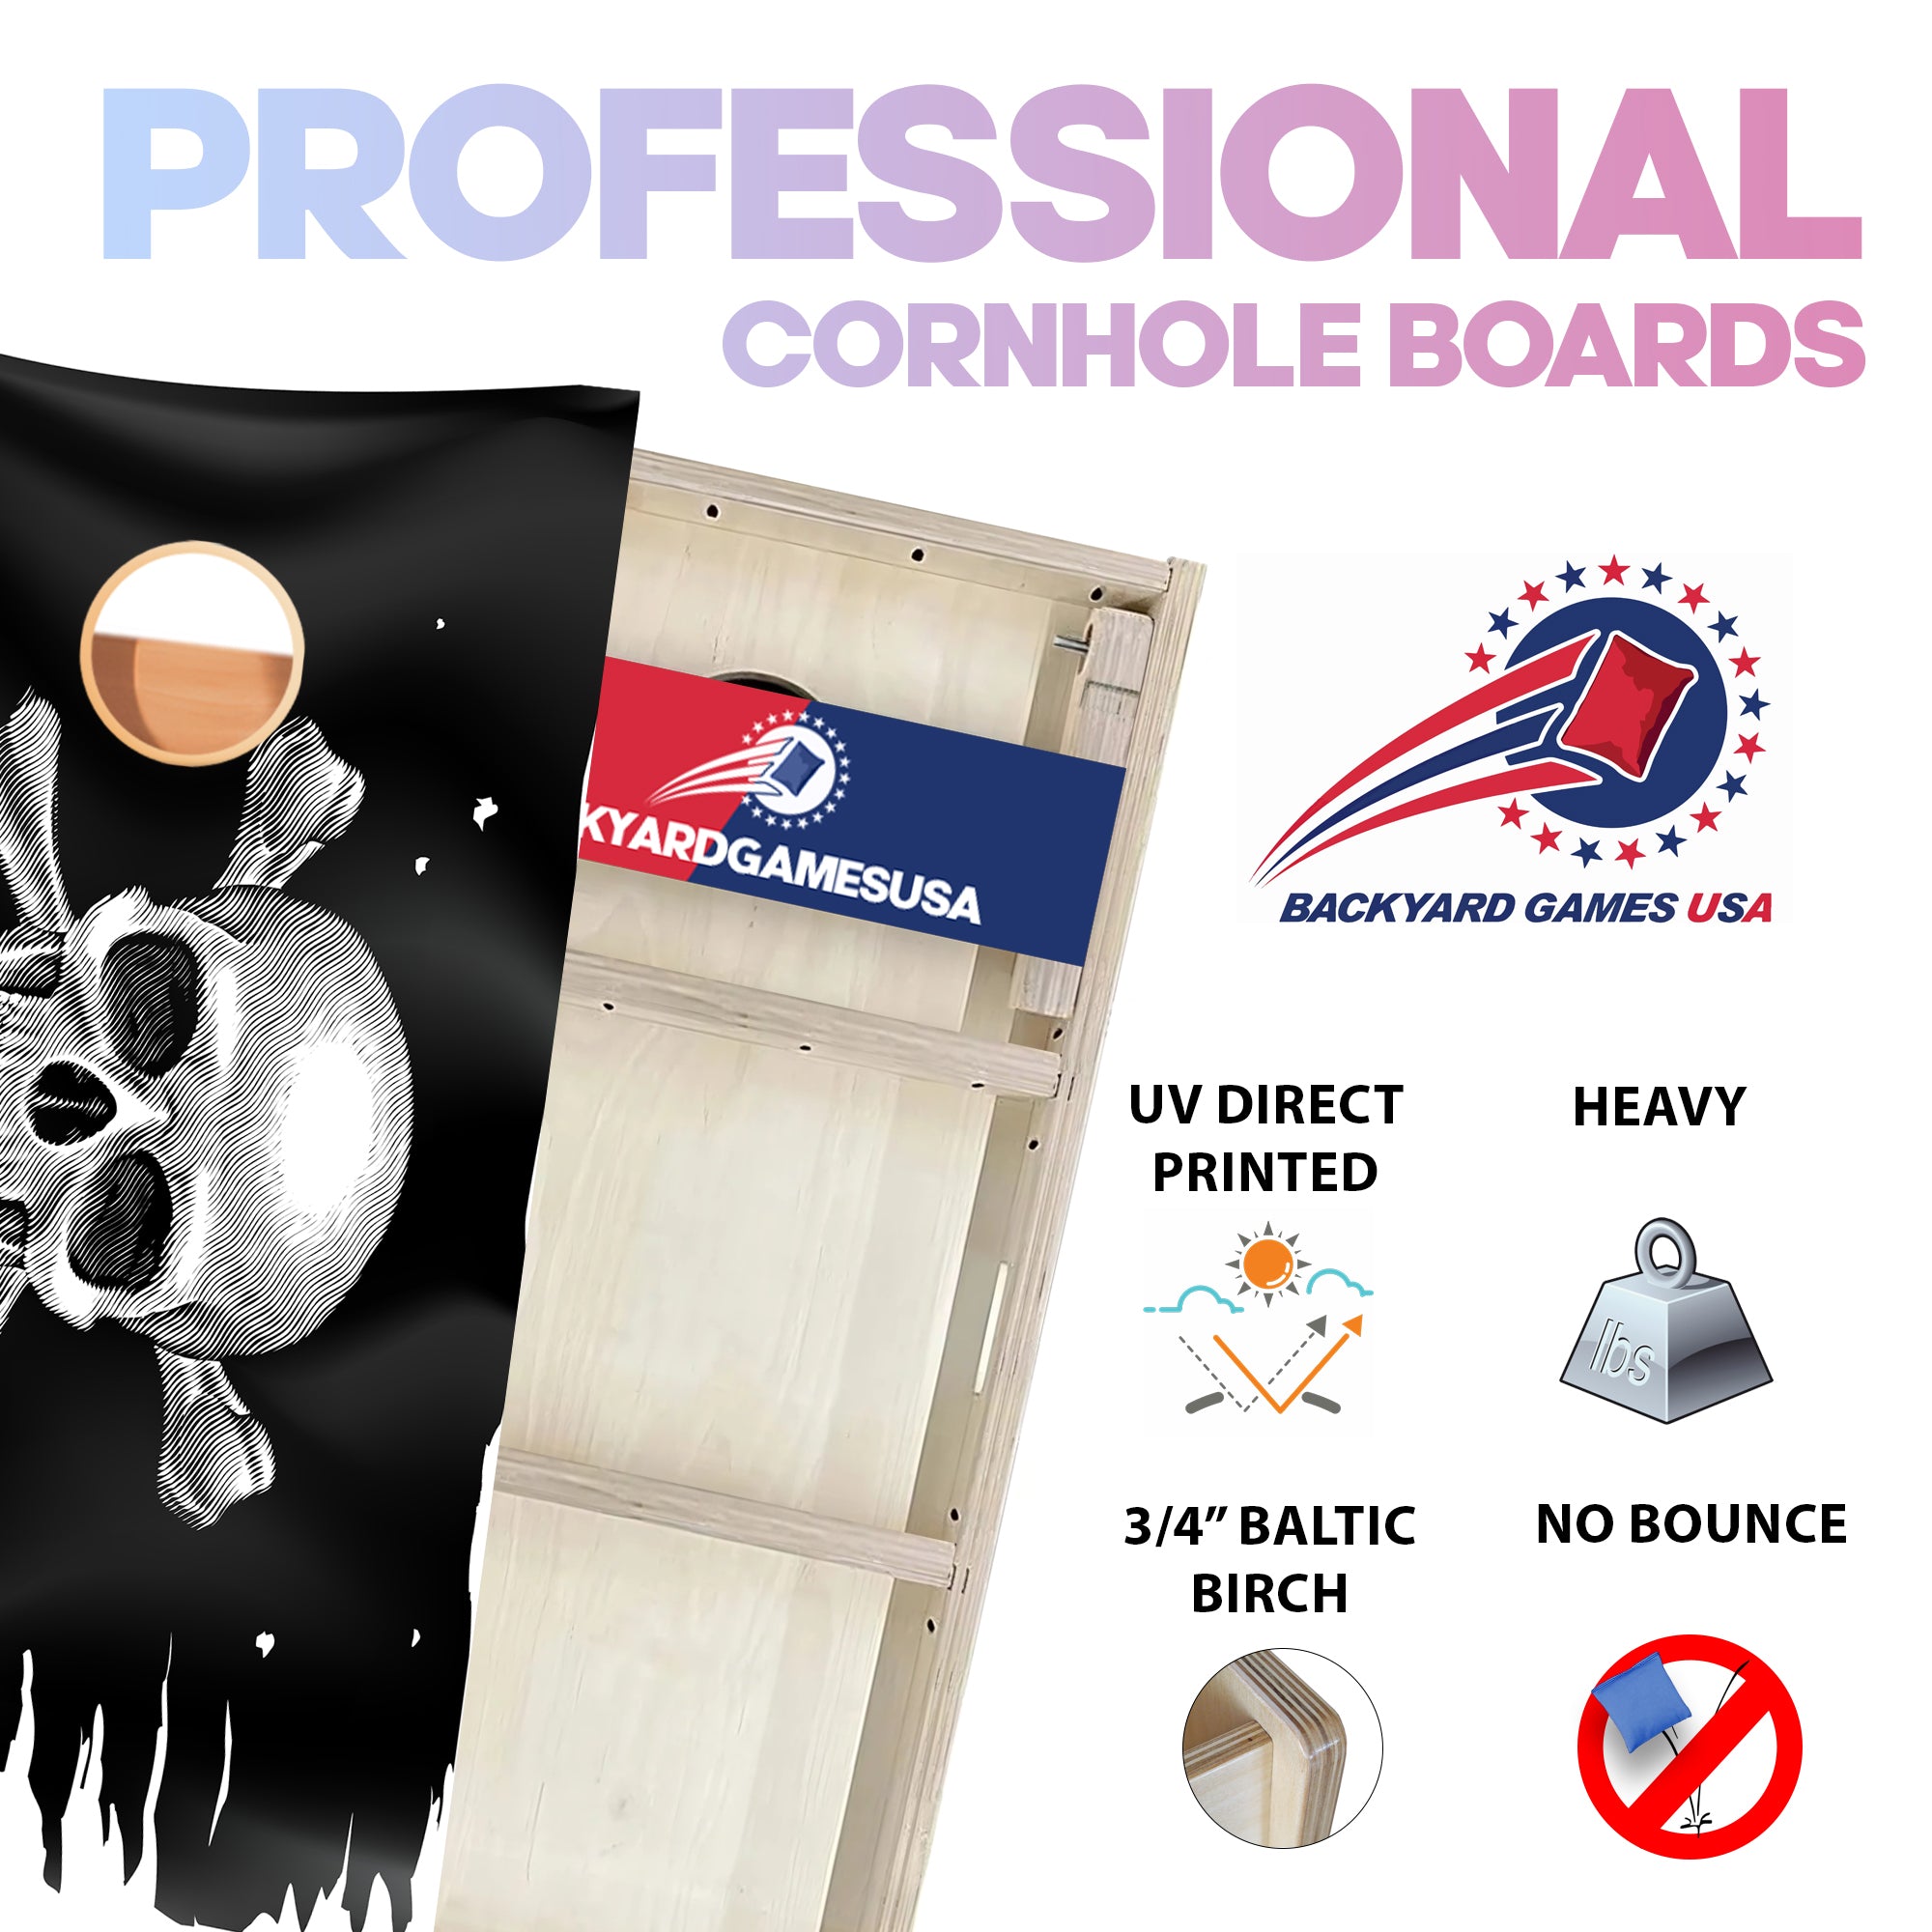 Pirate Skull Professional Cornhole Boards